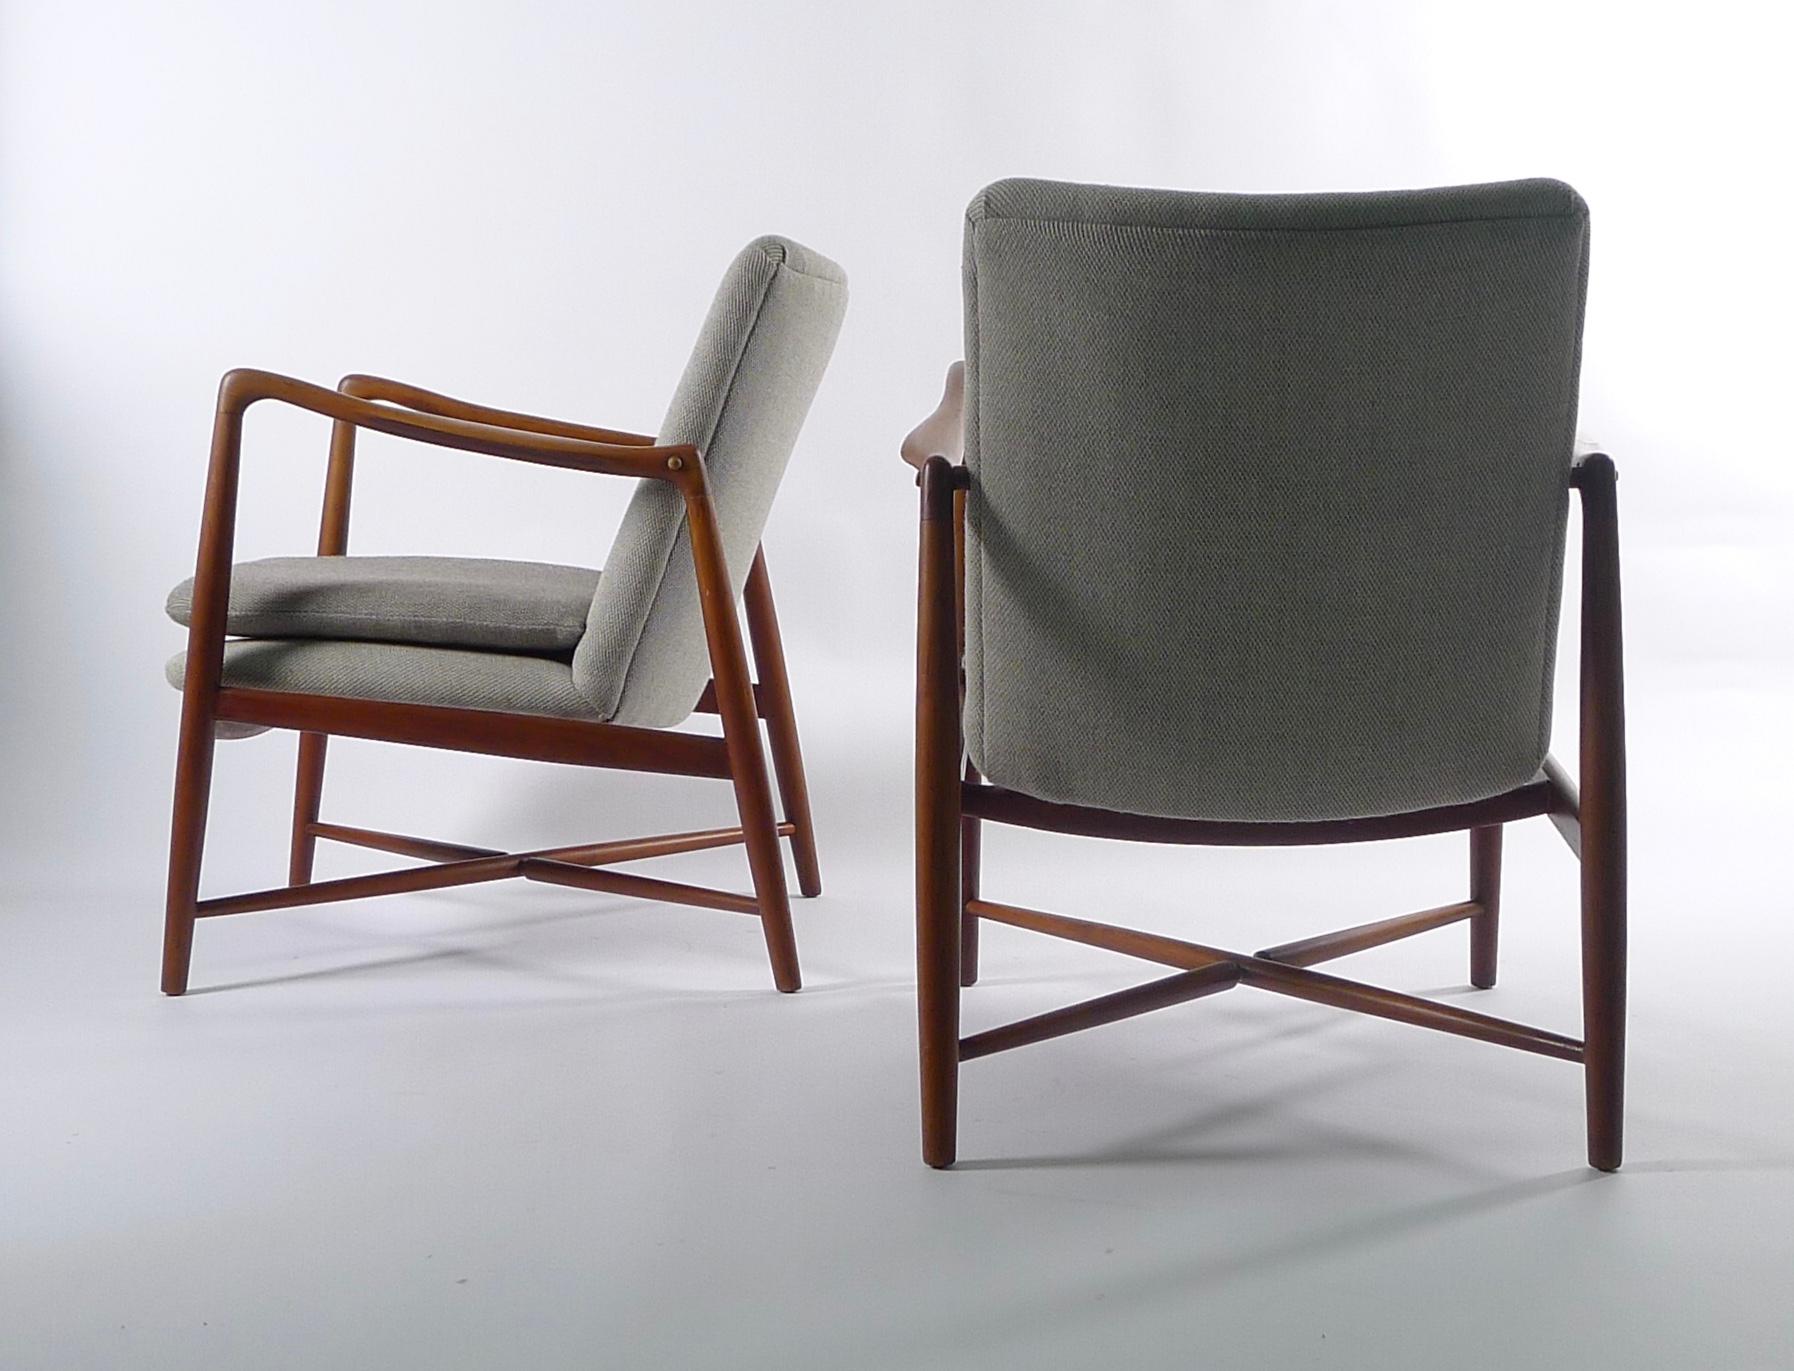 Danish Finn Juhl, Pair of Teak Fireplace Chairs, Model BO59, Bovirke, Denmark, 1946